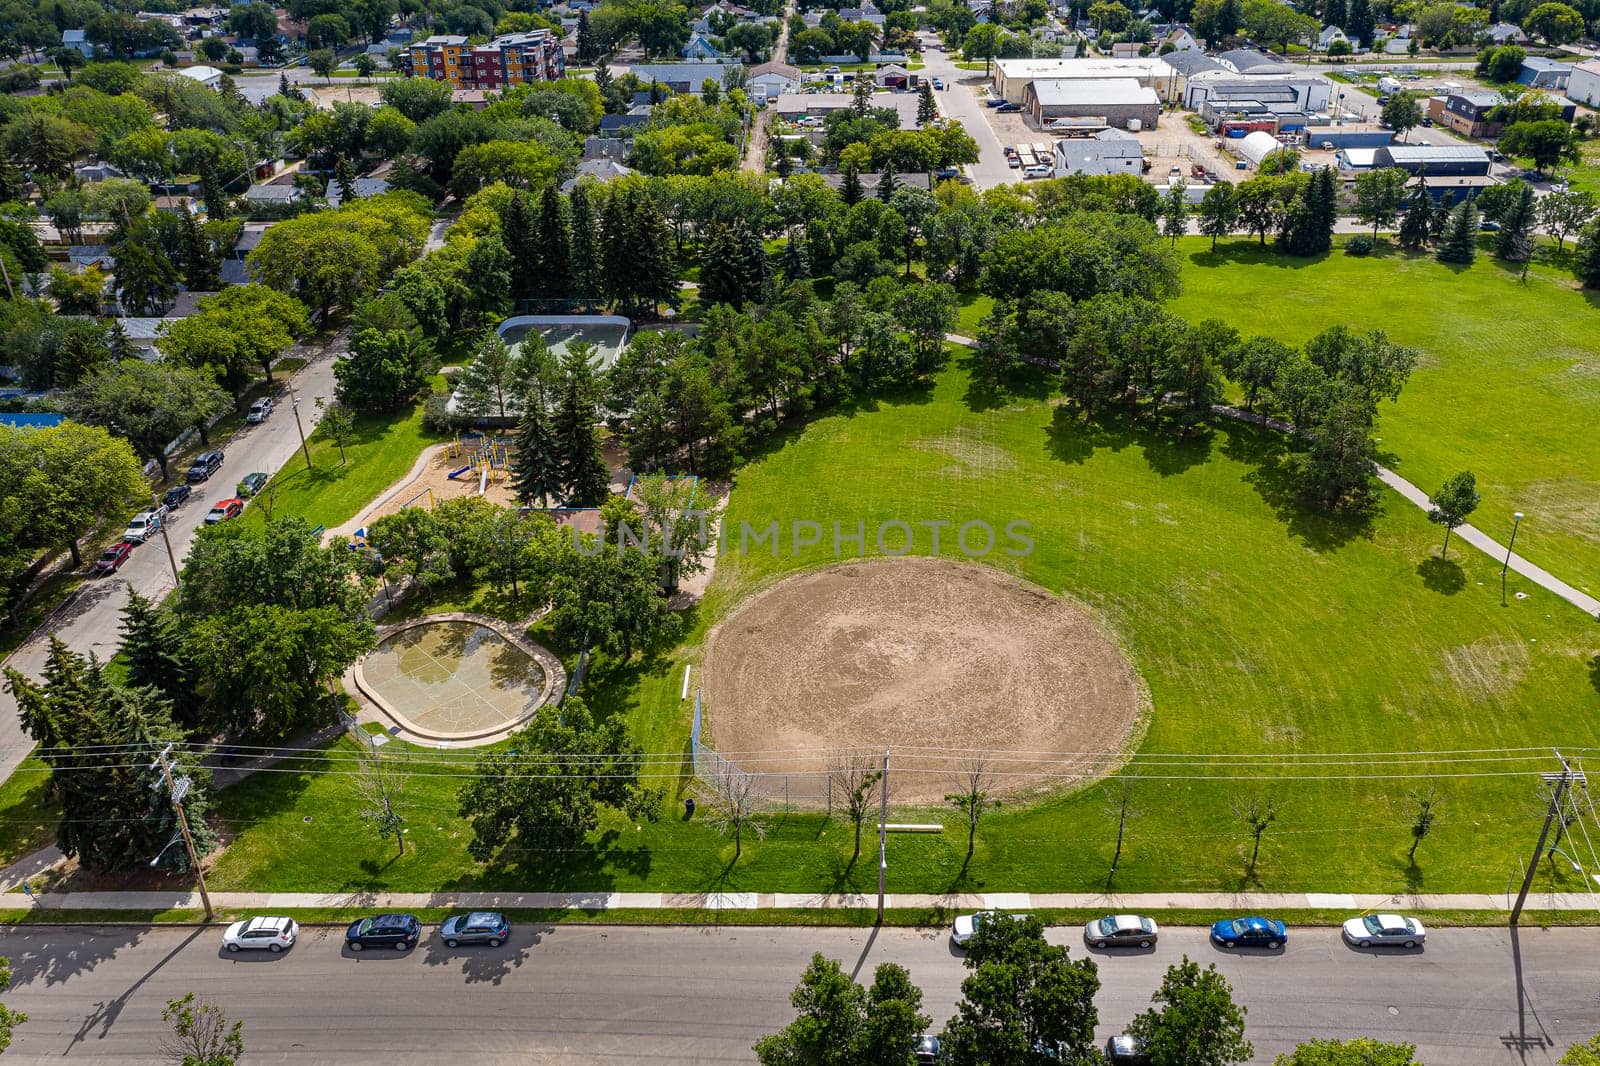 Optimist Park is located in the Riversdale neighborhood of Saskatoon.